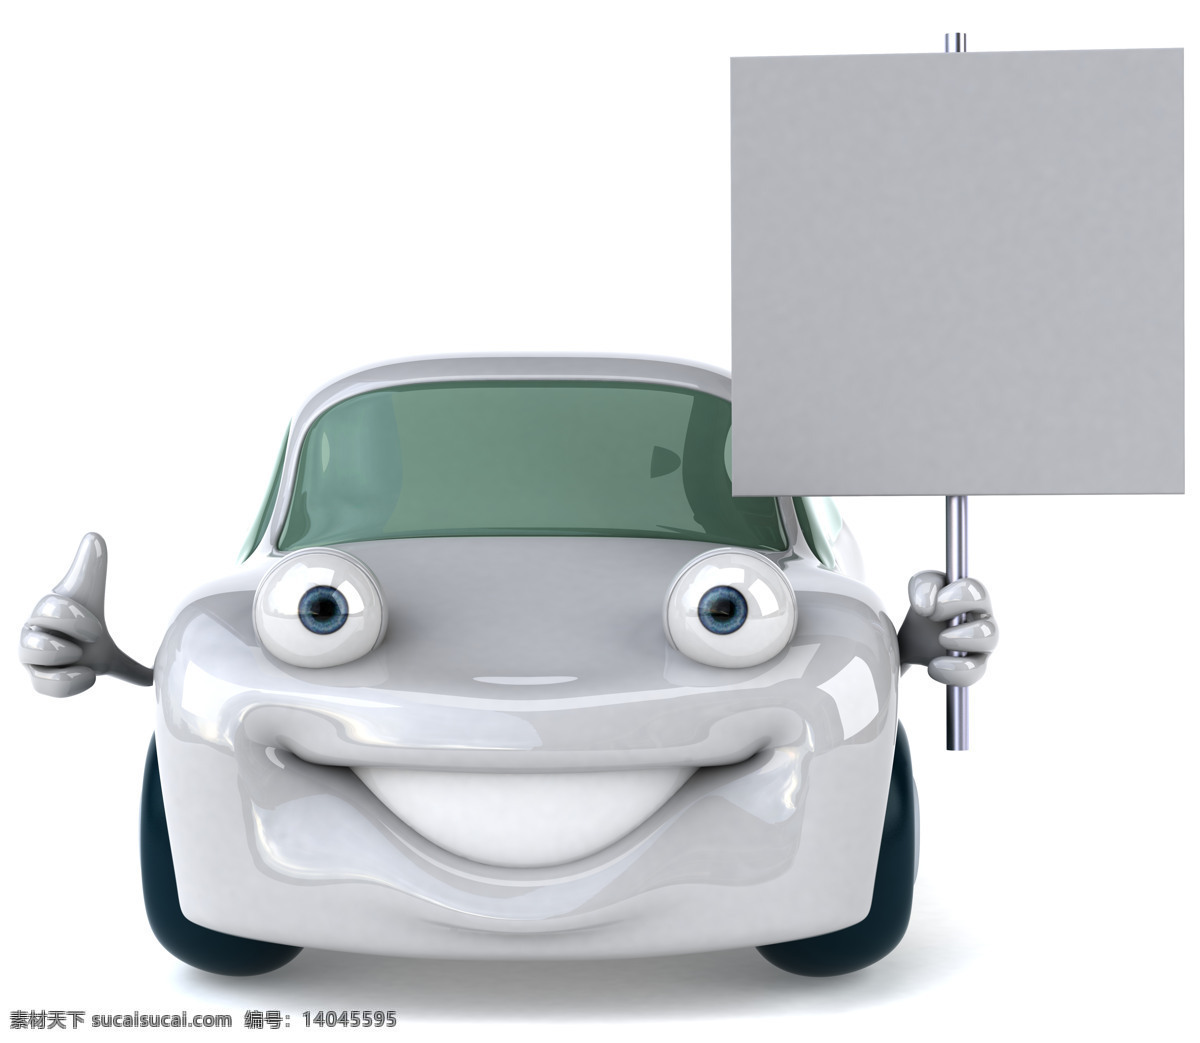 3d 3d设计 白板 高清图片 广告牌 卡通 空白 汽修 小汽车 小车 修理 维修 笑脸 设计素材 模板下载 矢量图 其他矢量图